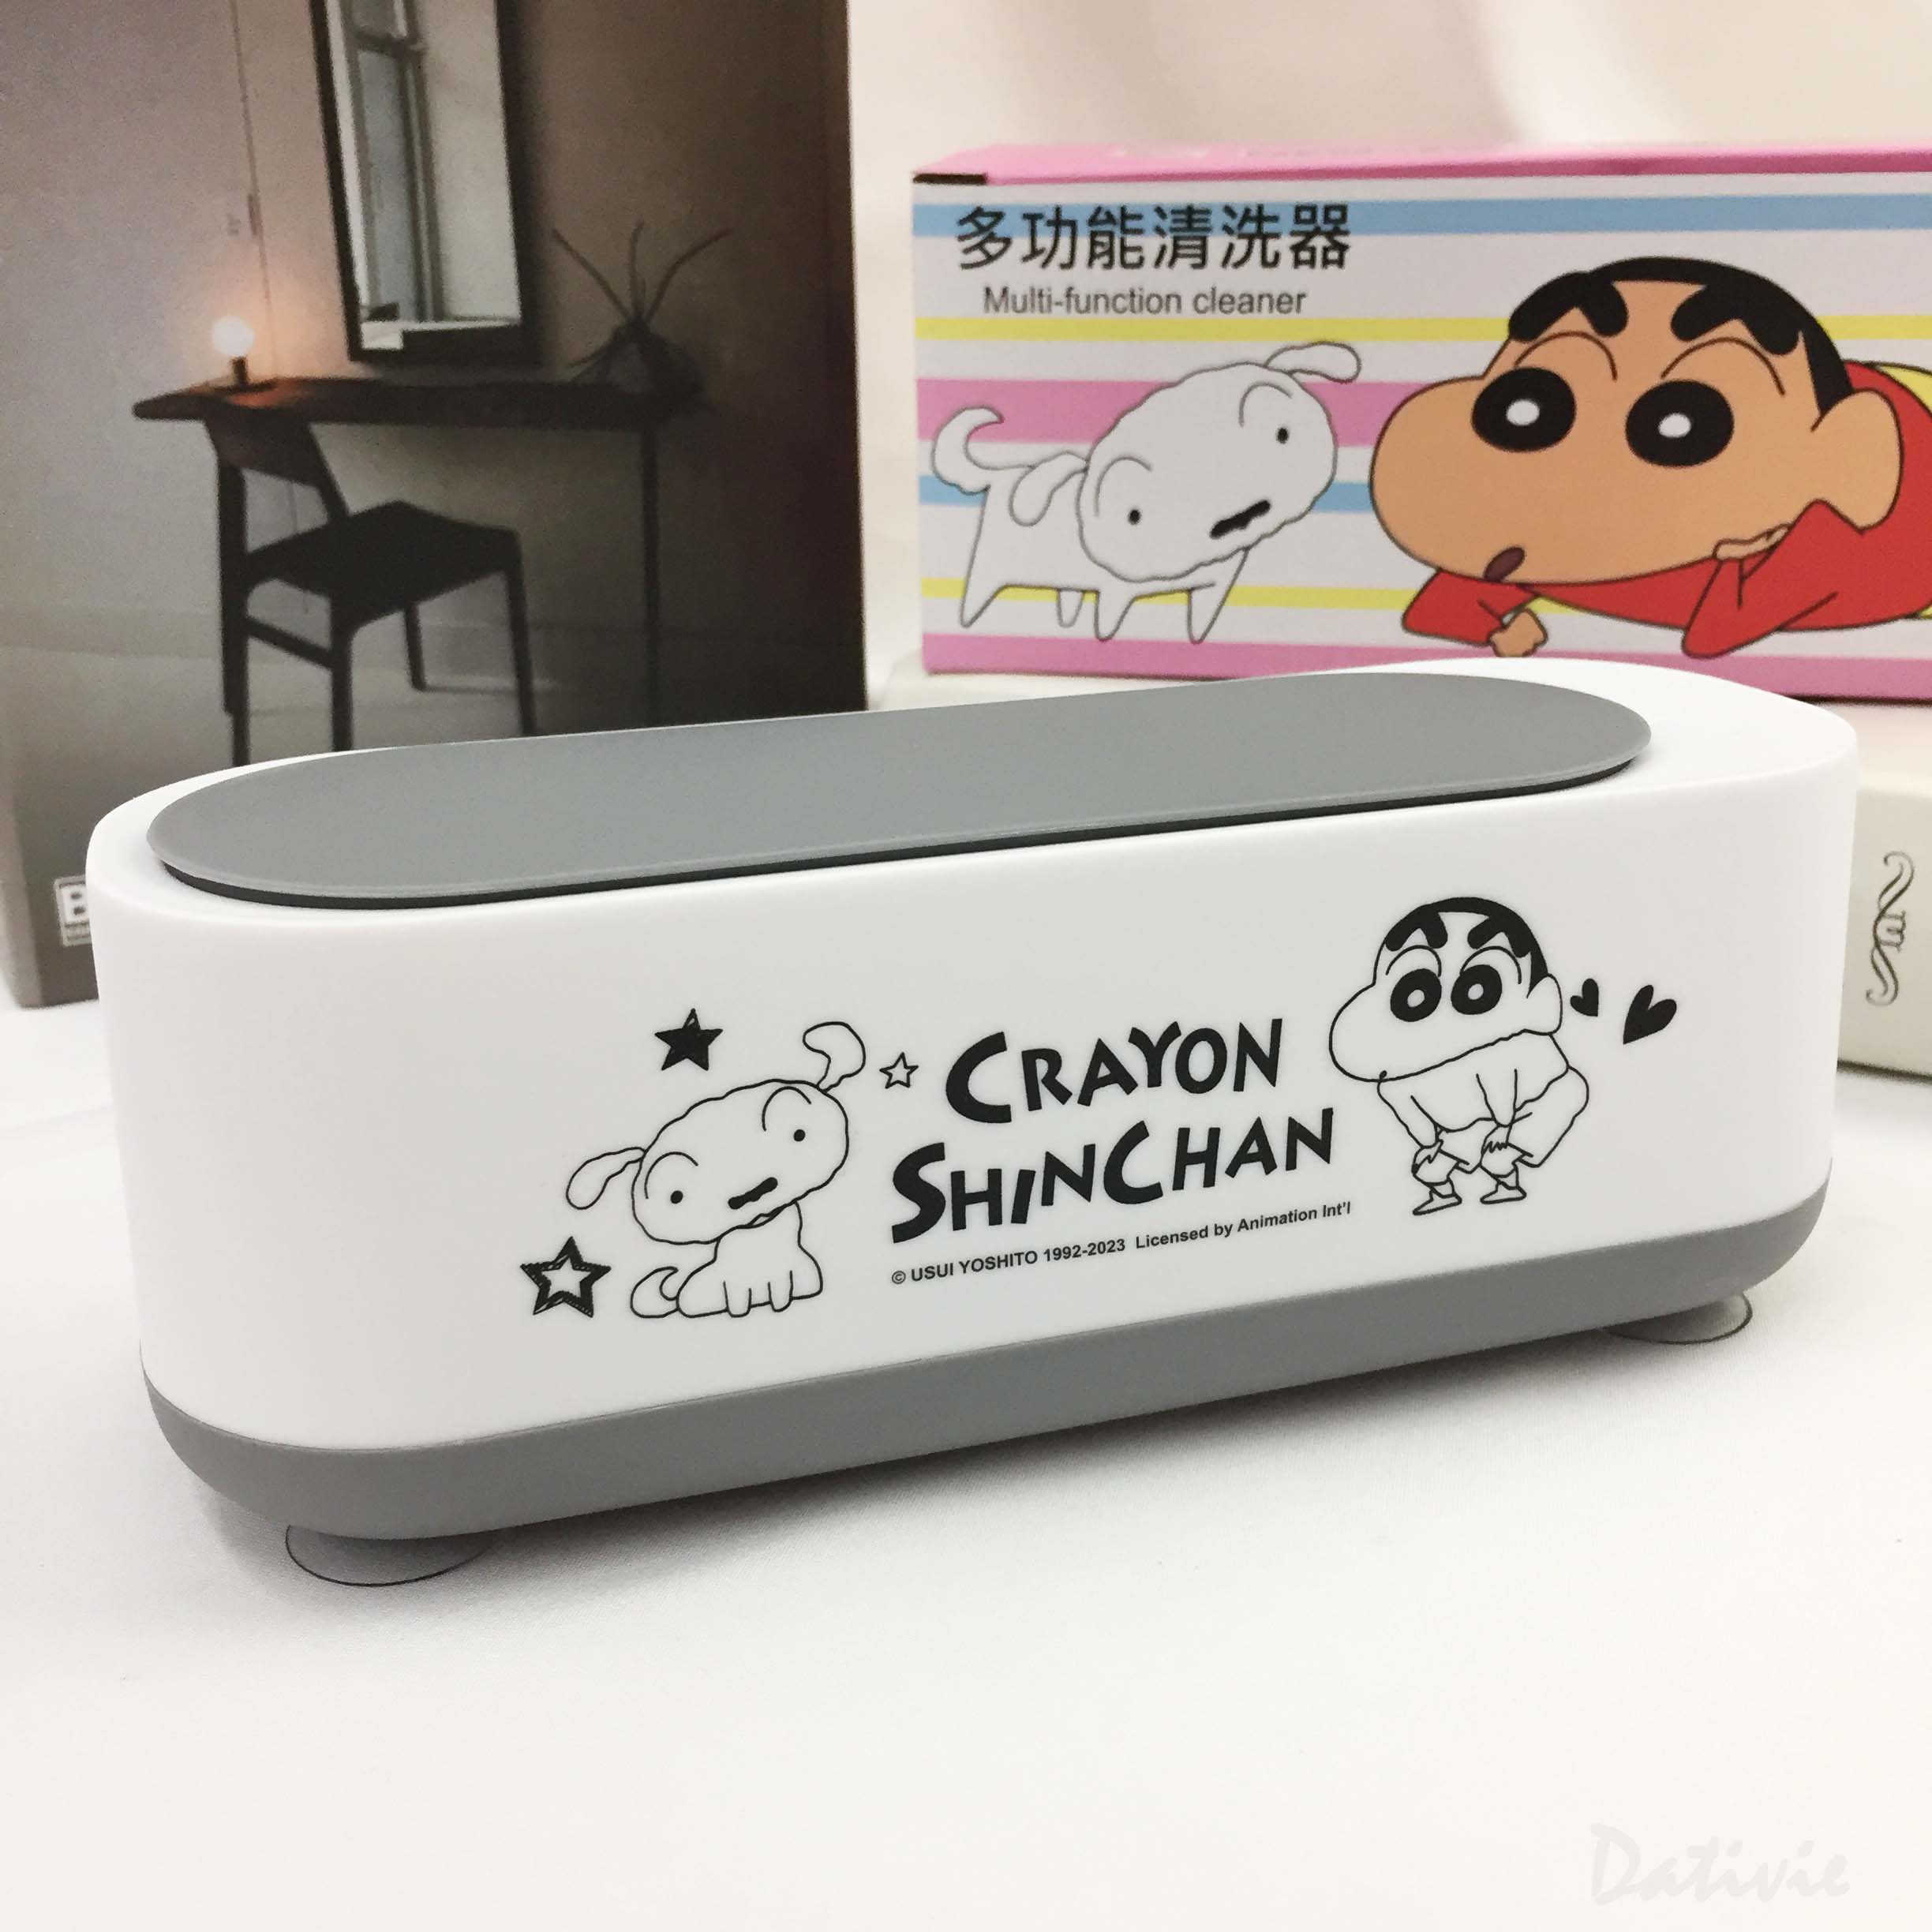 多功能清洗器-蠟筆小新 Crayon Shin Chain クレヨンしんちゃん 正版授權